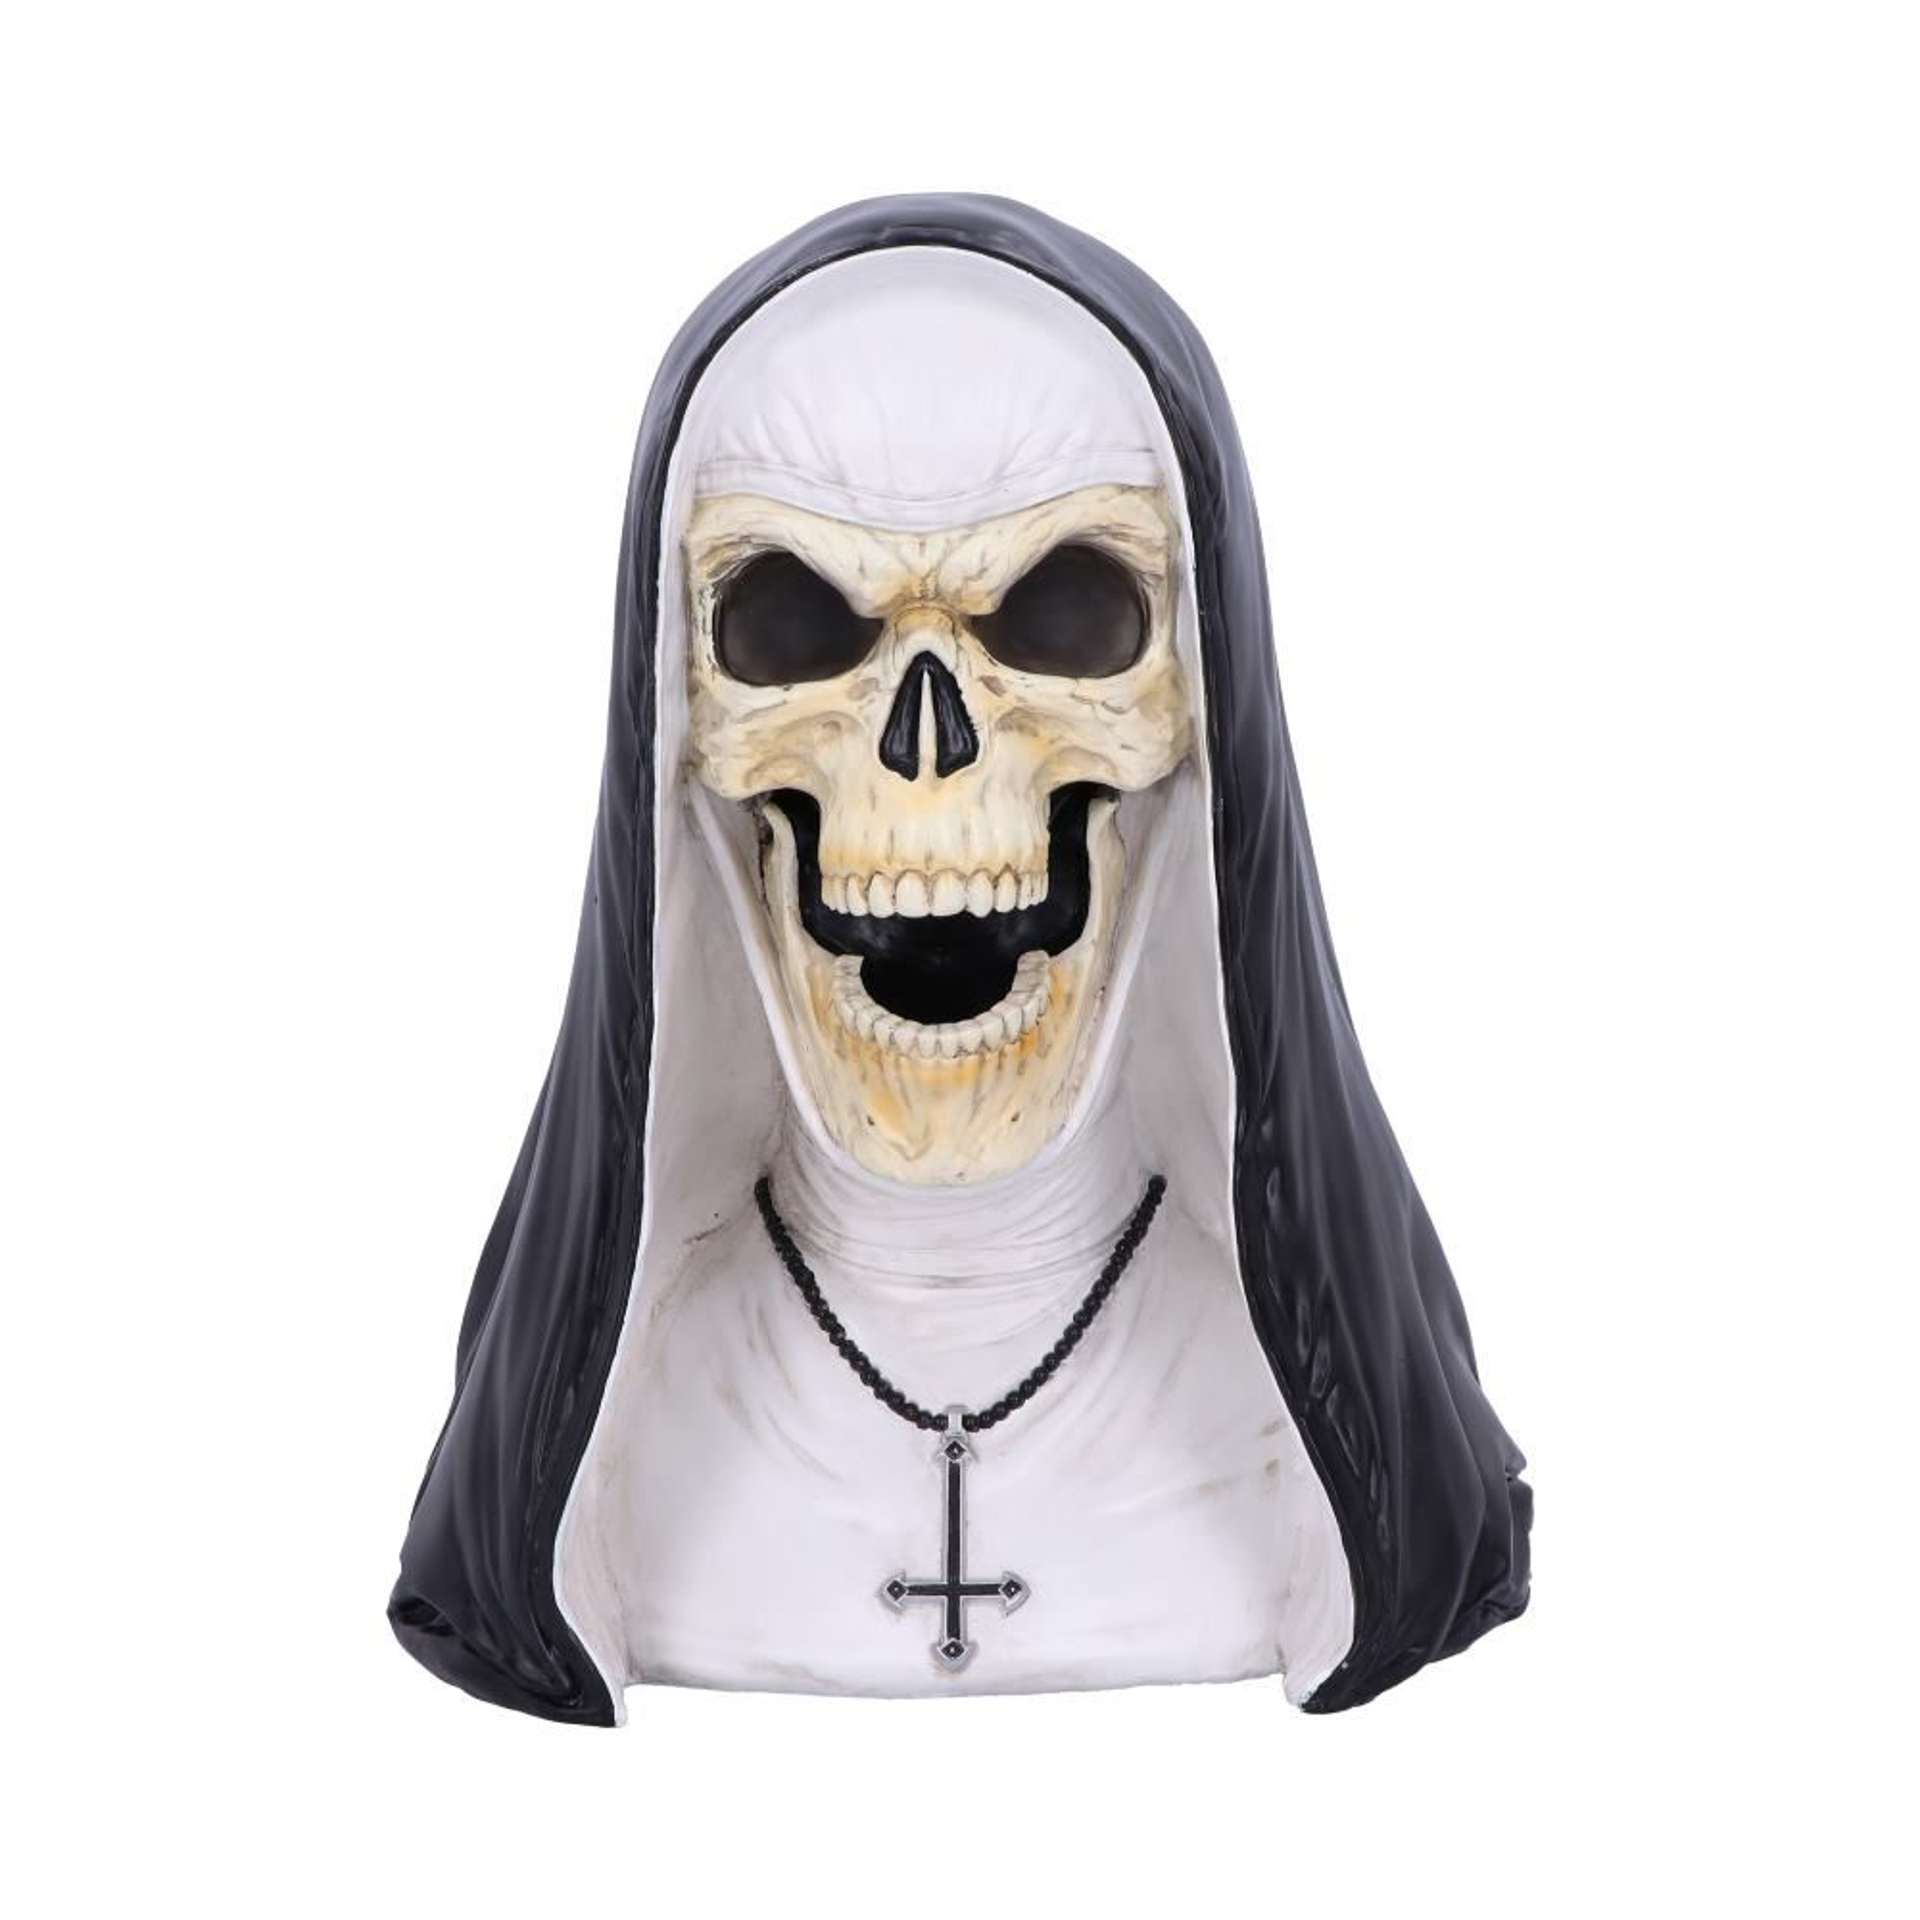 Sister Mortis - Skeleton Nun Horror Bust 29cm